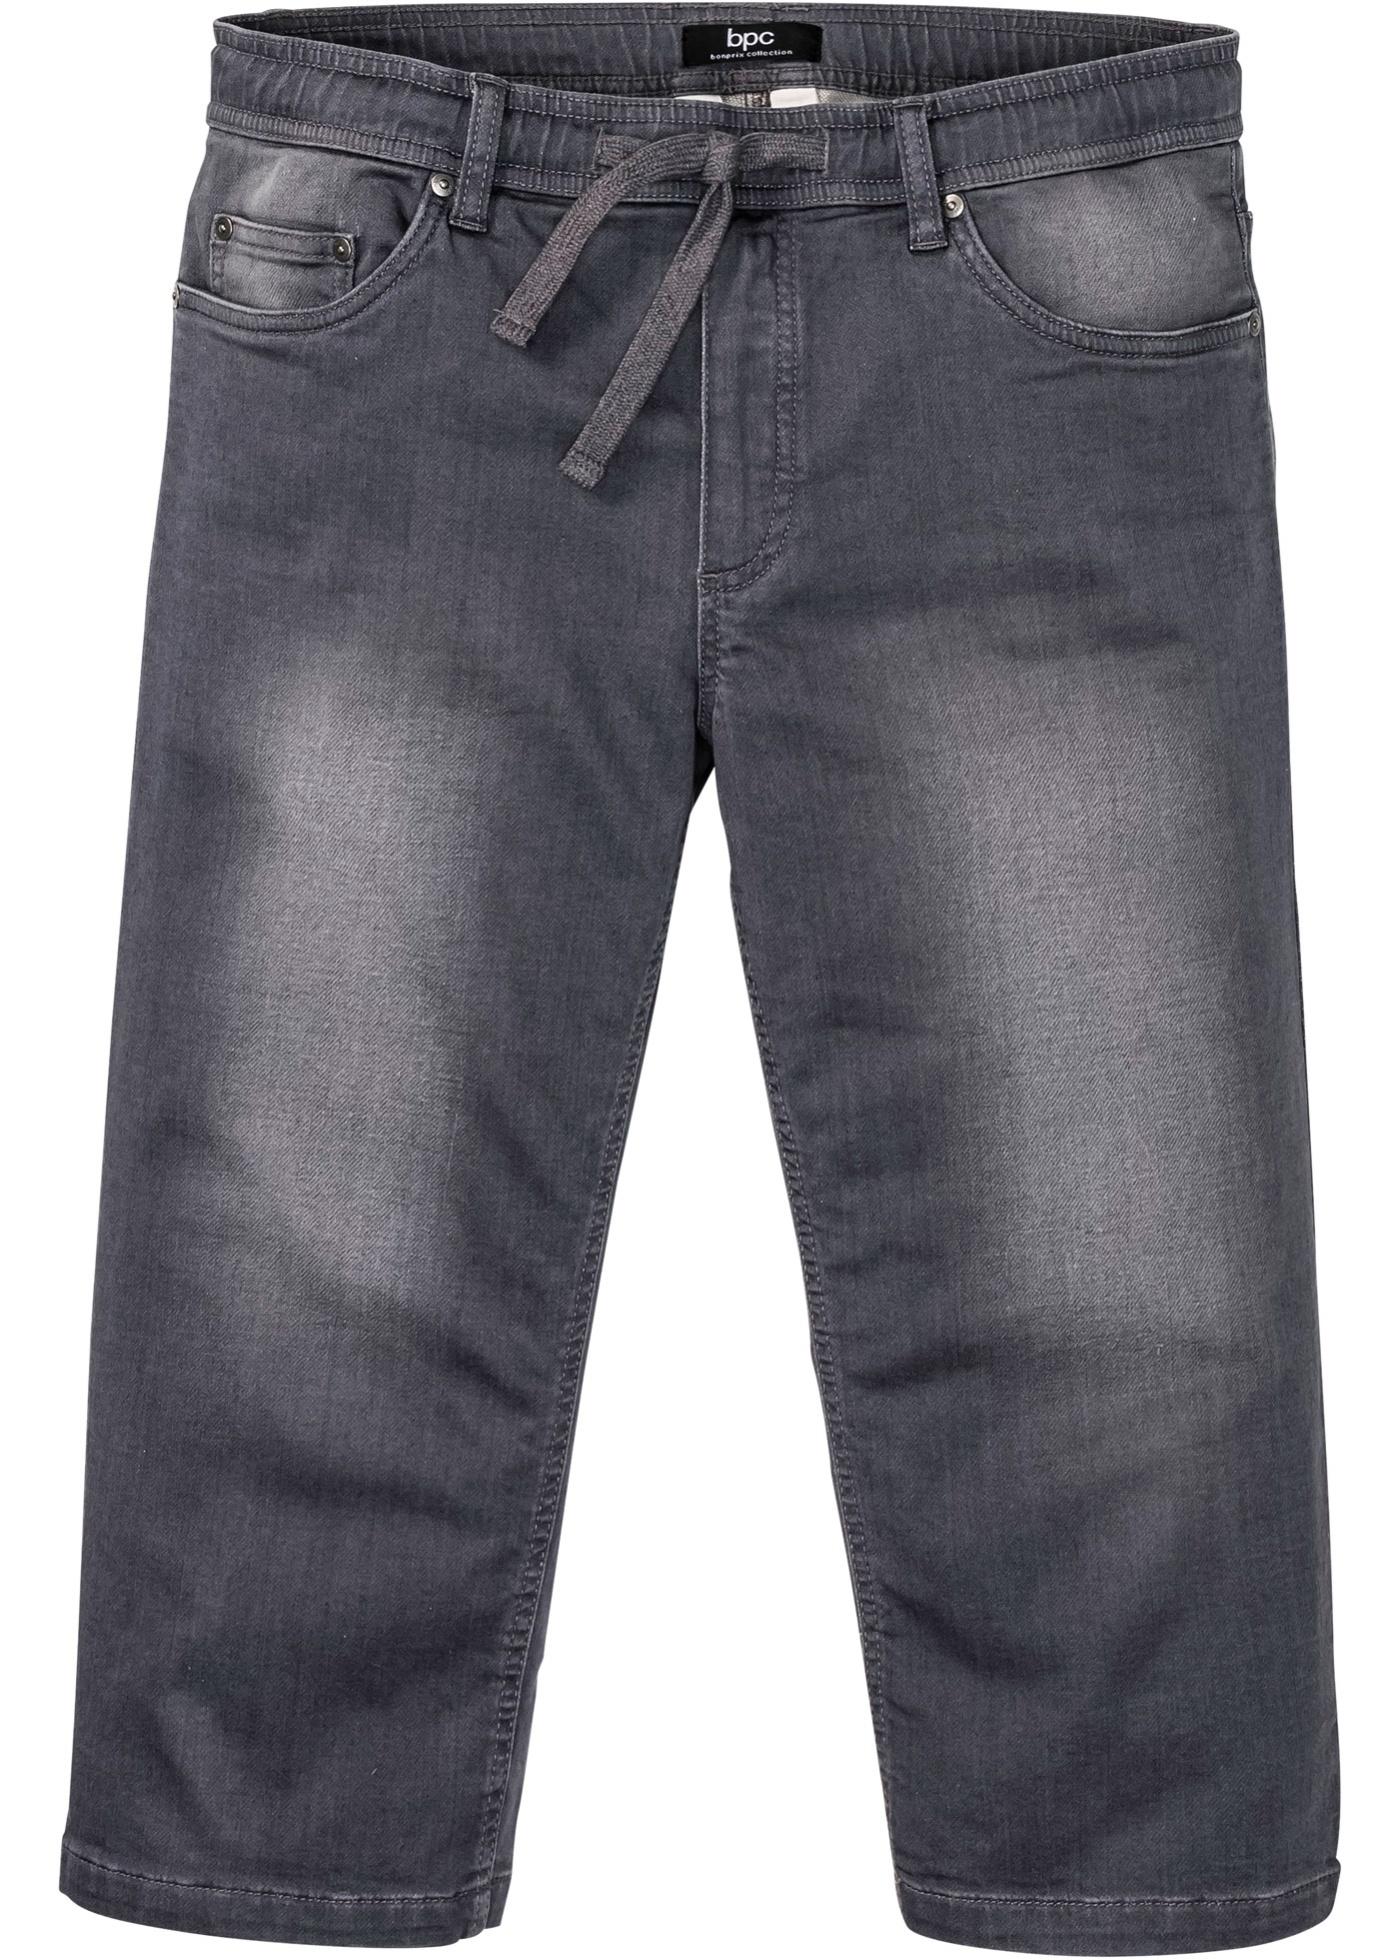 Regular Fit 3/4 Stretch-Jeans mit Komfortschnitt, Straight